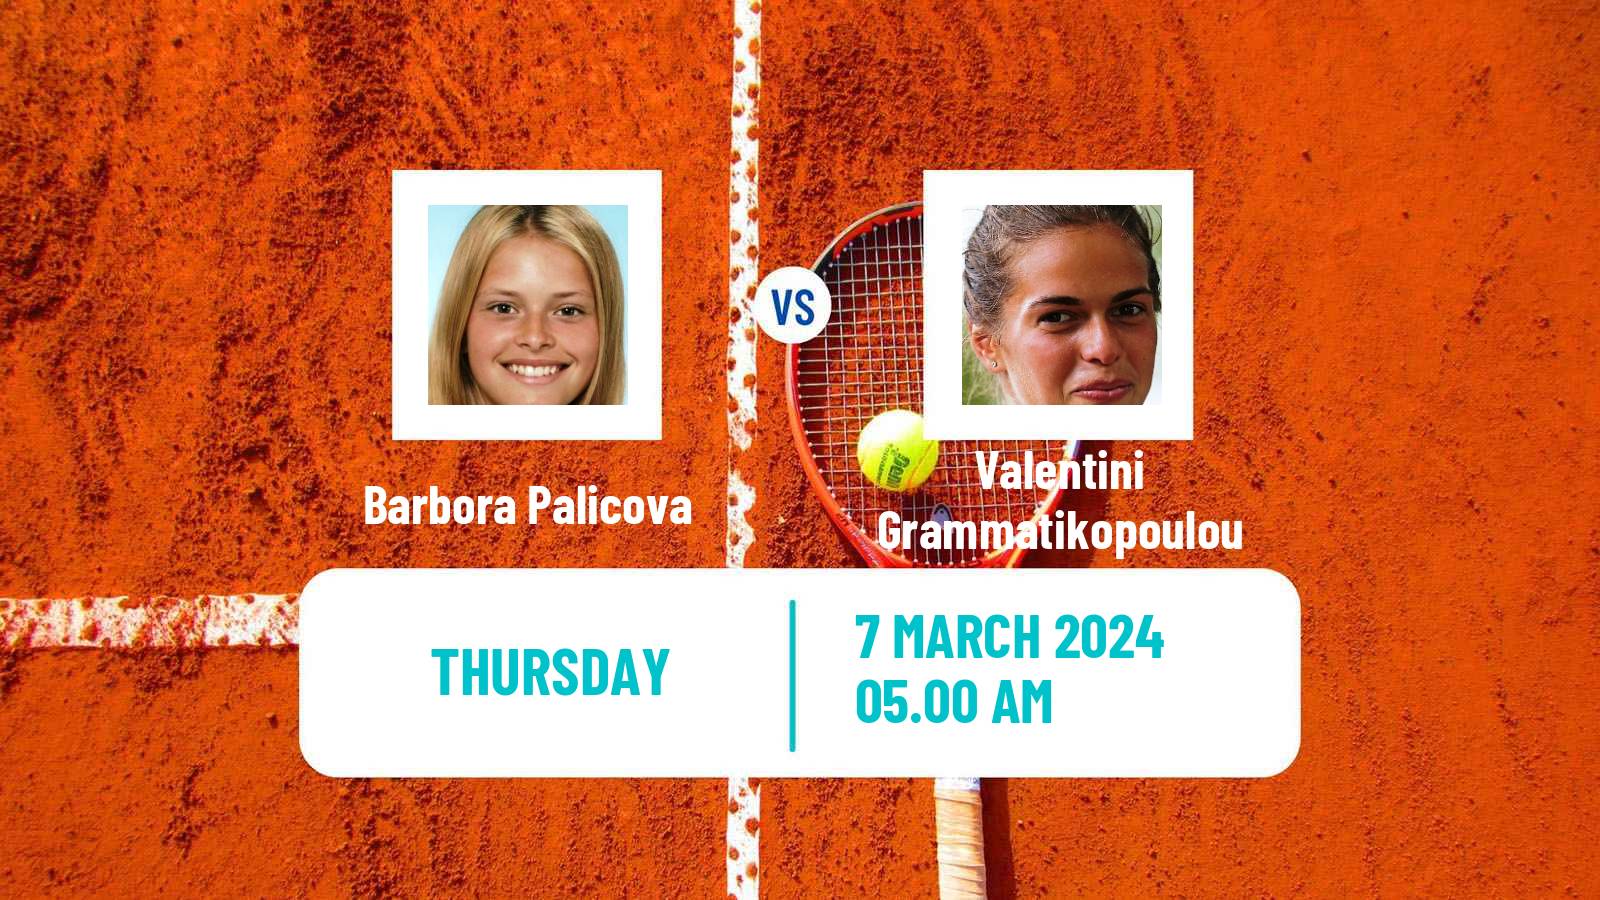 Tennis ITF W35 Solarino Women Barbora Palicova - Valentini Grammatikopoulou